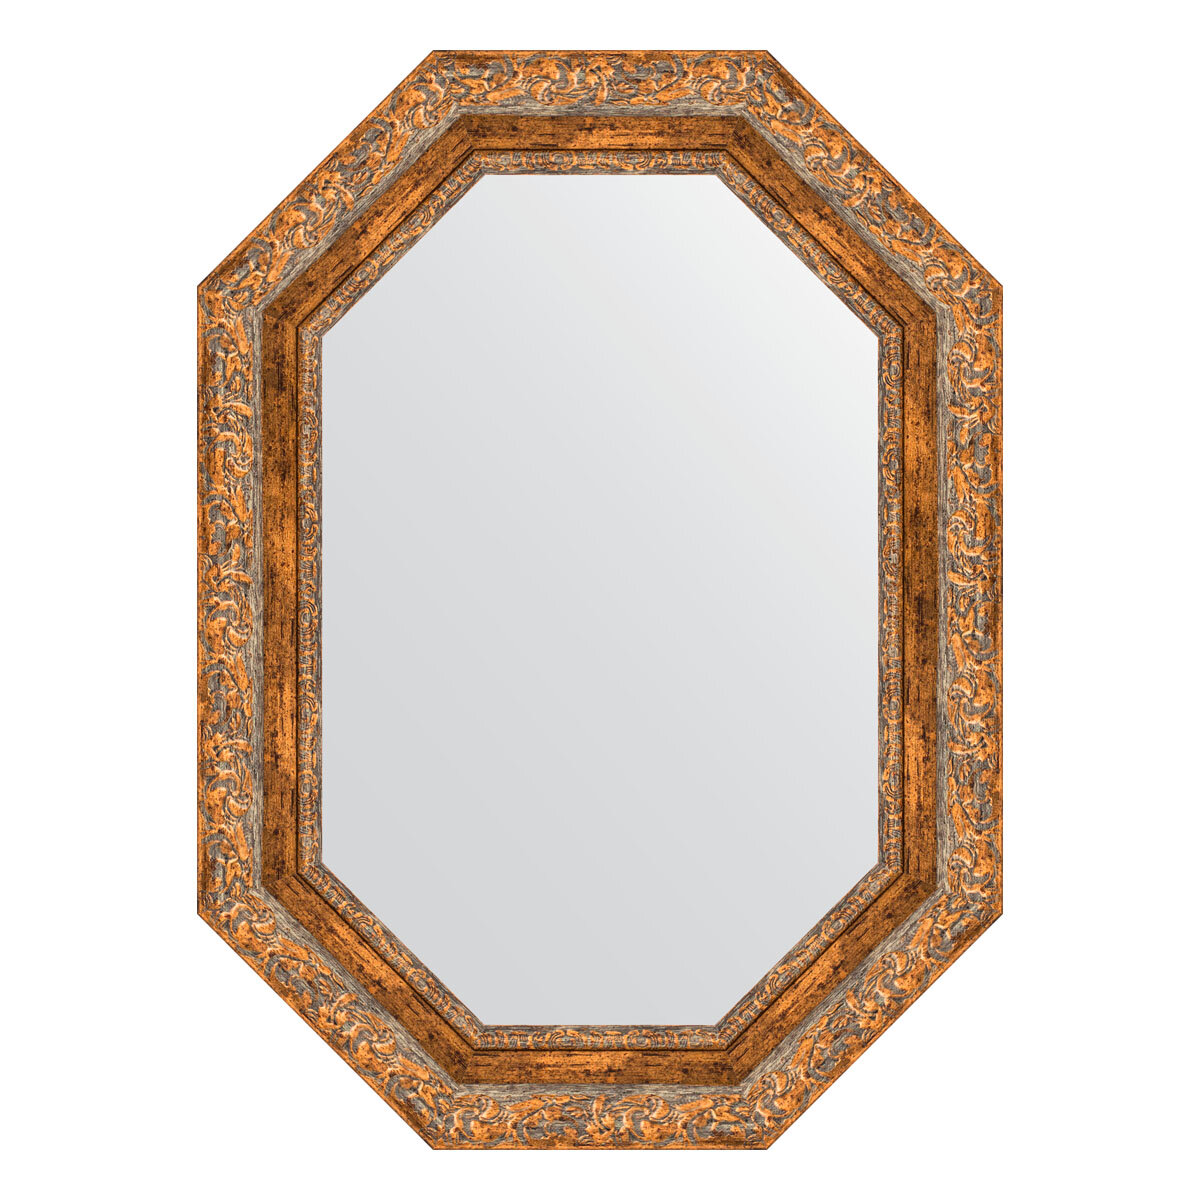 Зеркало настенное Polygon EVOFORM в багетной раме виньетка античная бронза, 55х75 см, для гостиной, прихожей, спальни и ванной комнаты, BY 7153